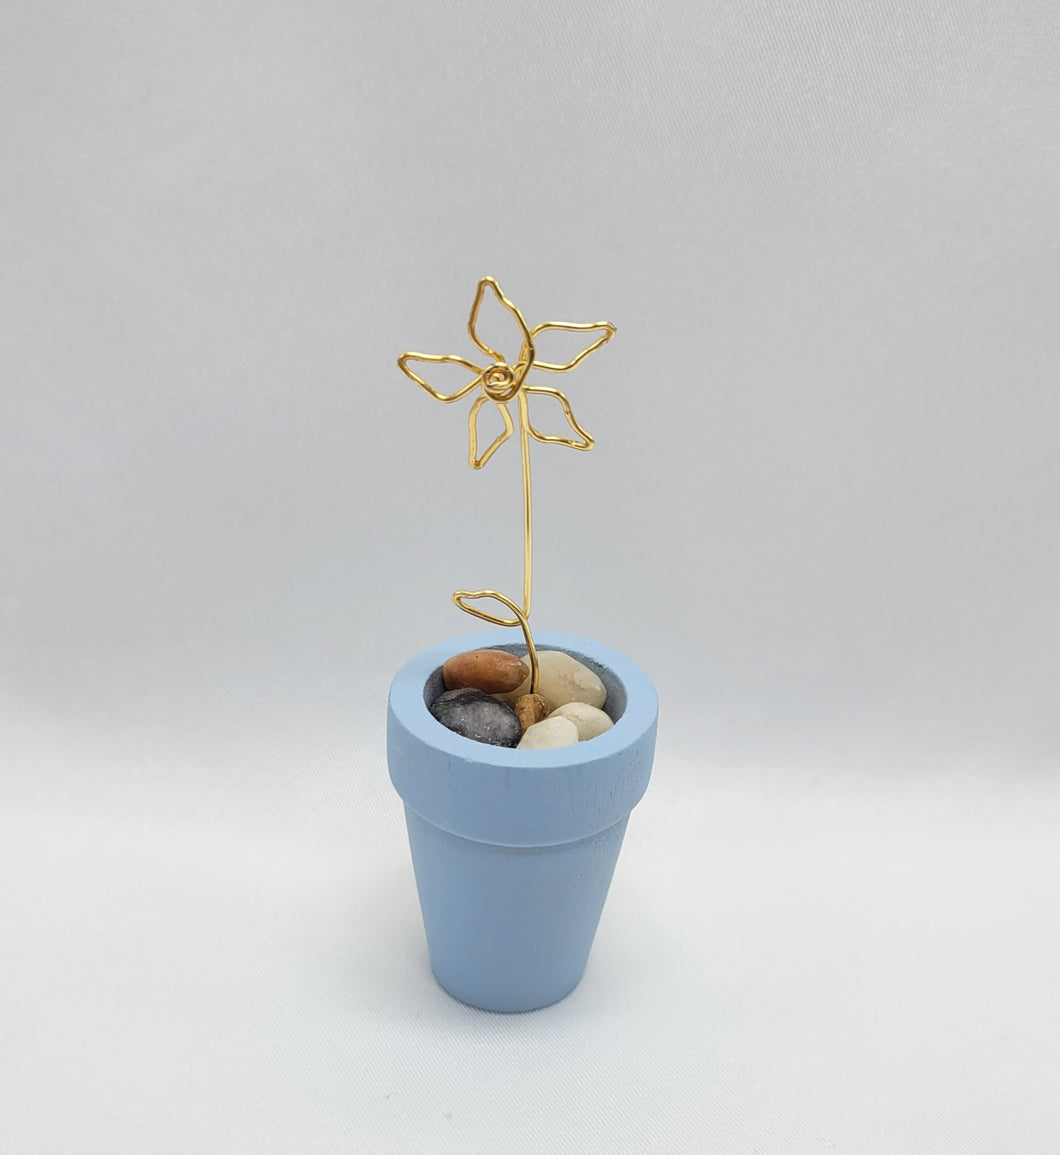 Mini Wire Flower in Pot